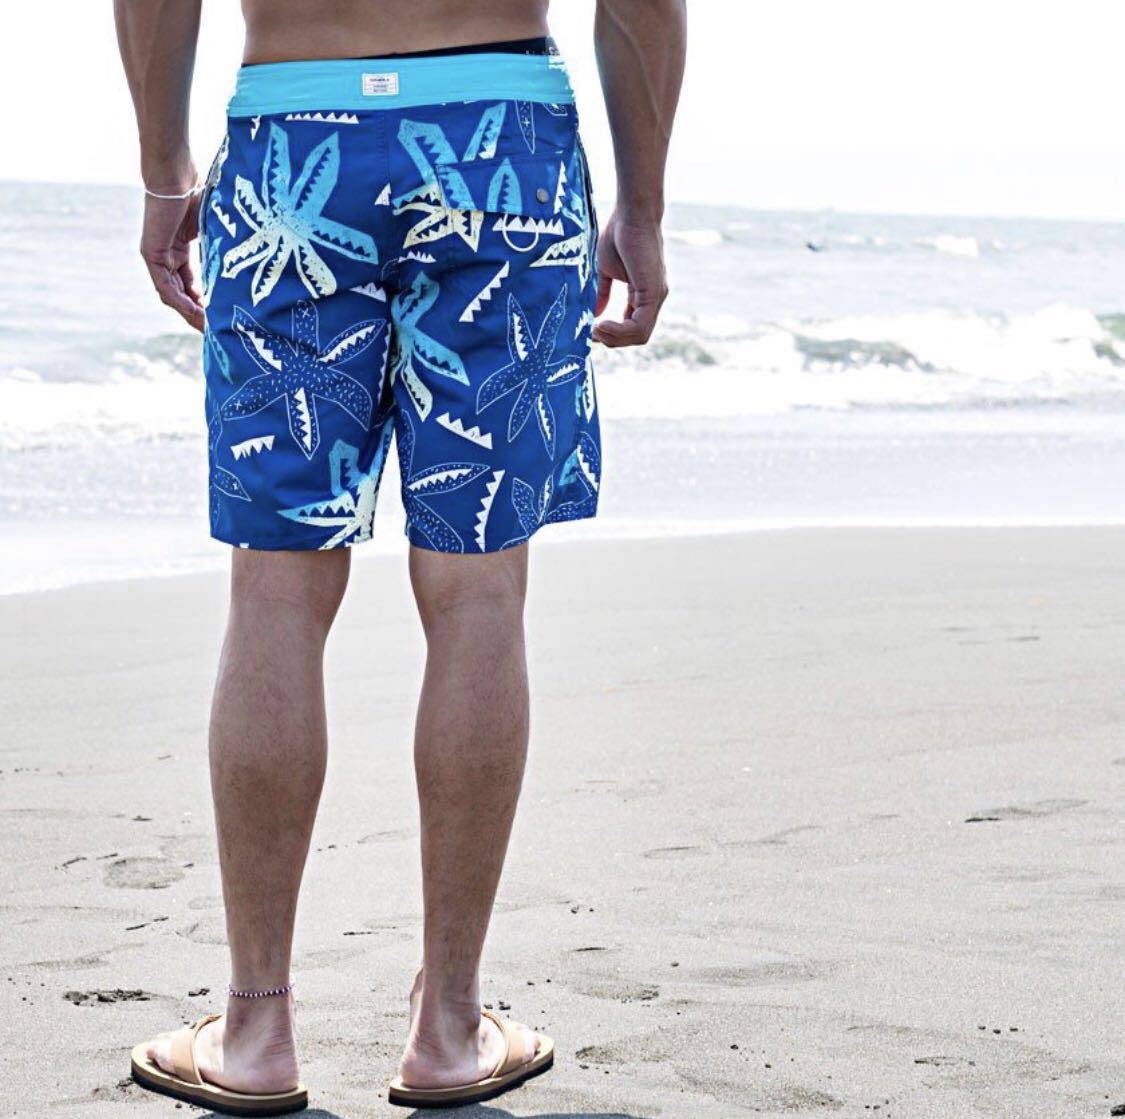 【 новый товар 】O'NEILL ...  мужской   доска  ... ... брюки    море  ...  укороченные брюки   шорты    вода ...  принт  рукоятка   голубой 30 дюймов  M